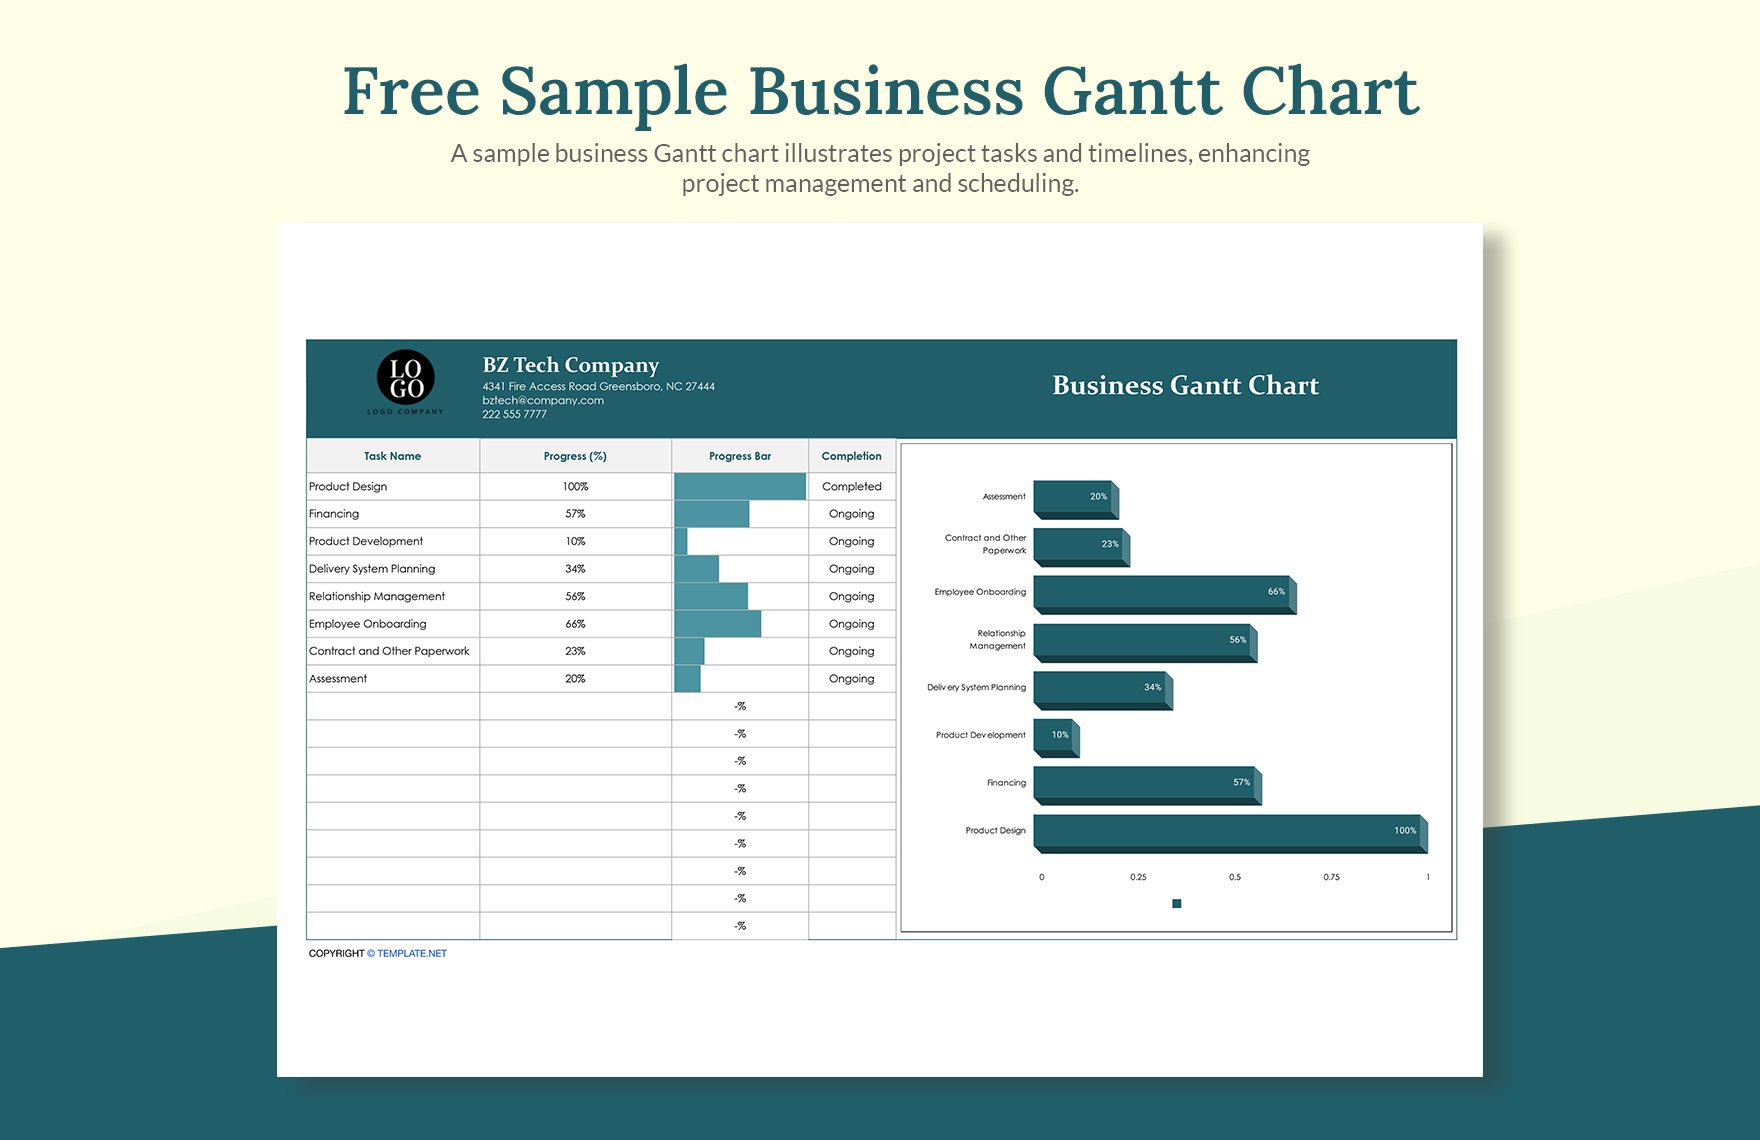 Sample Business Gantt Chart Template